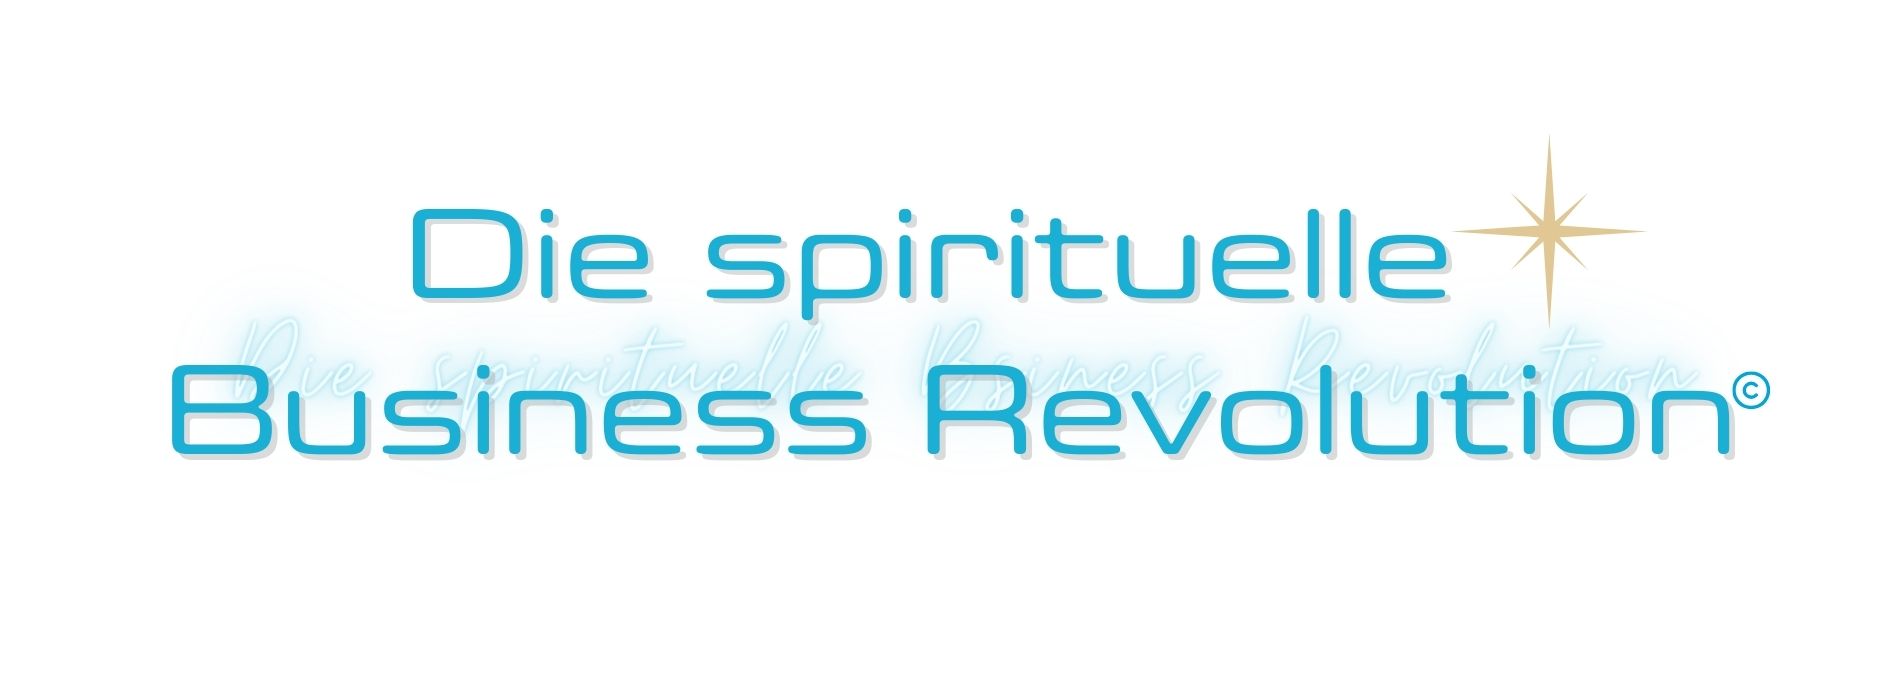 Die spirituelle Business Revolution